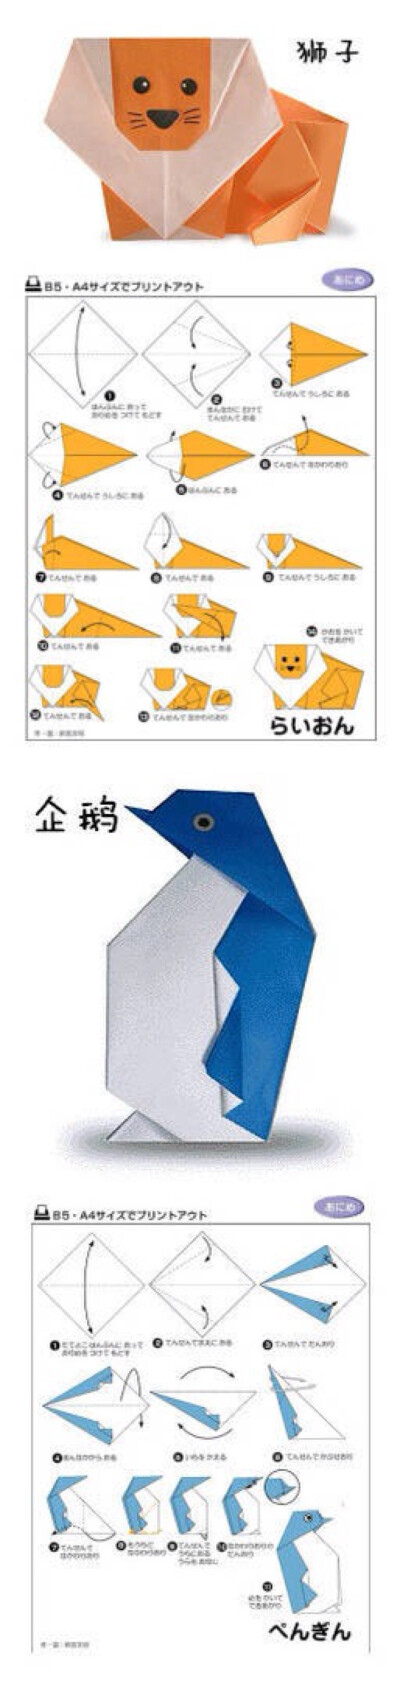 日系萌版卡通动物折纸教程